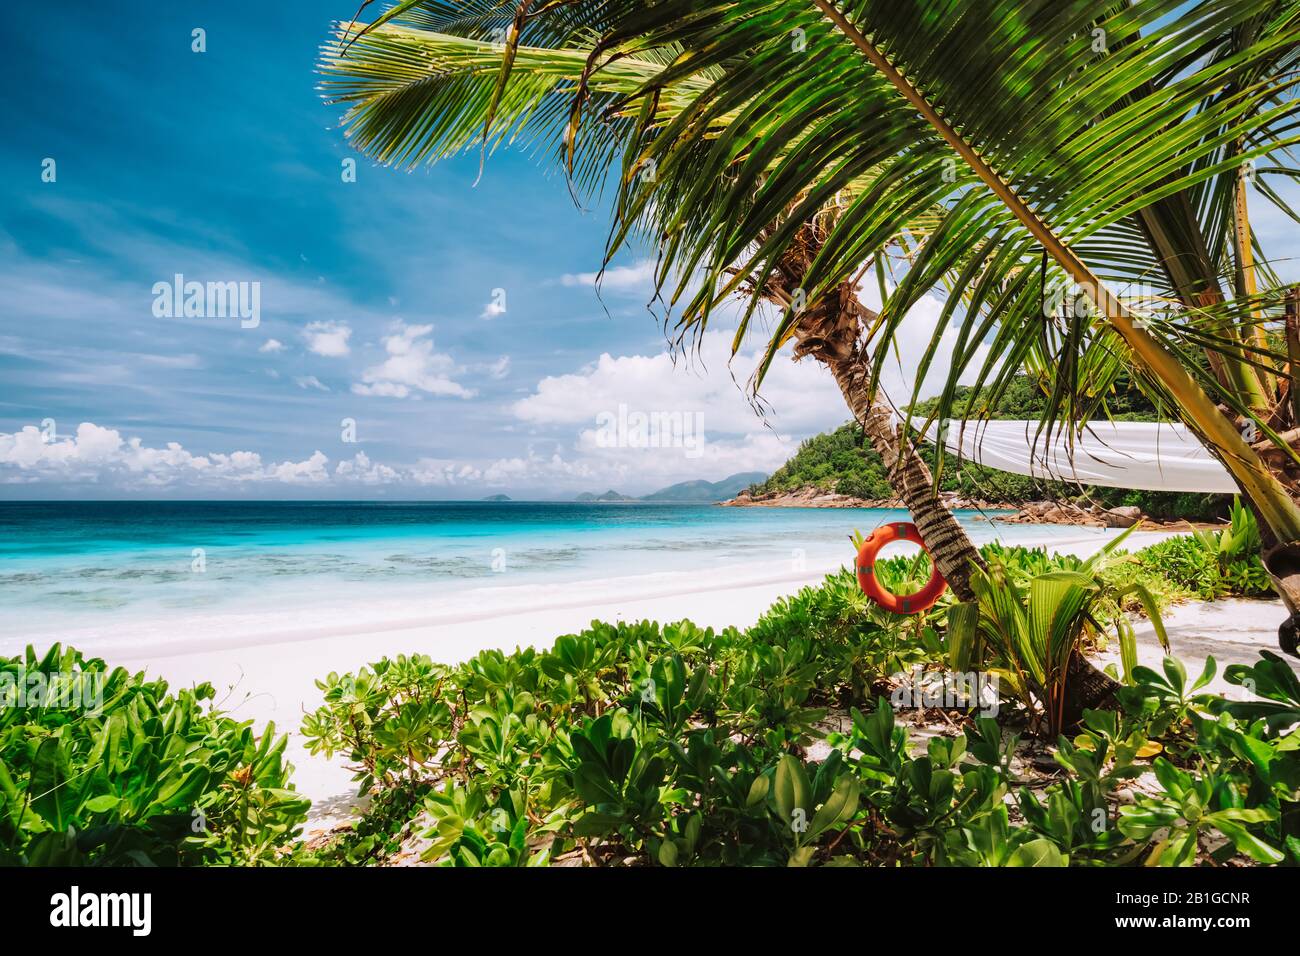 Scène tropicale de belle plage de sable blanc, lagon turquoise de l'océan et feuillage. Vacances au paradis. Ile Mahe, Seychelles Banque D'Images